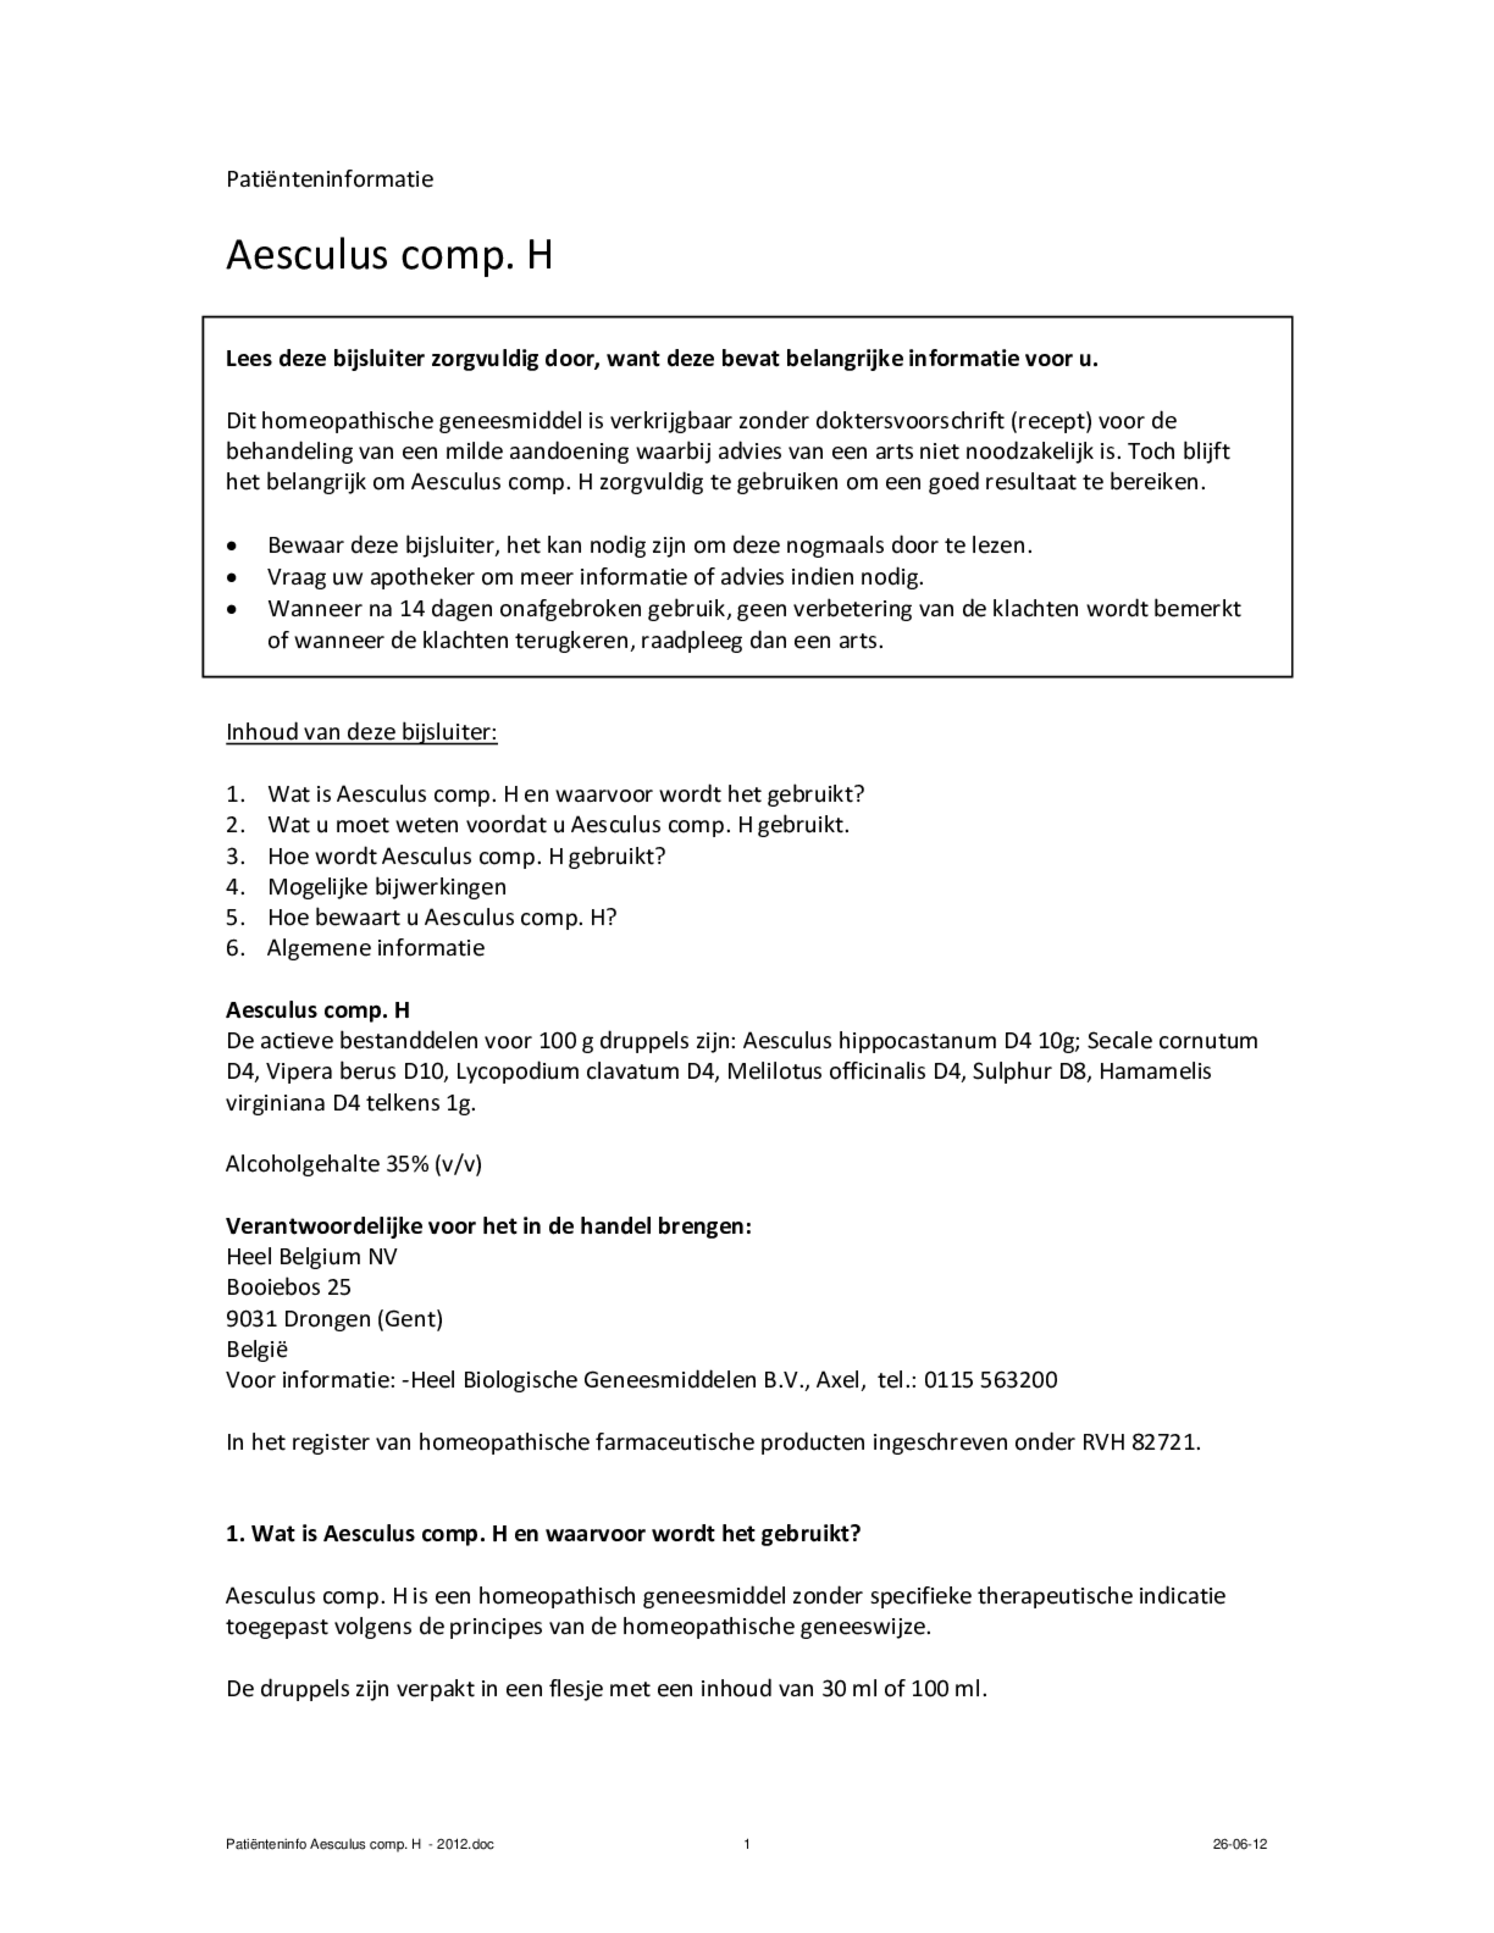 Aesculus Compositum H afbeelding van document #1, bijsluiter